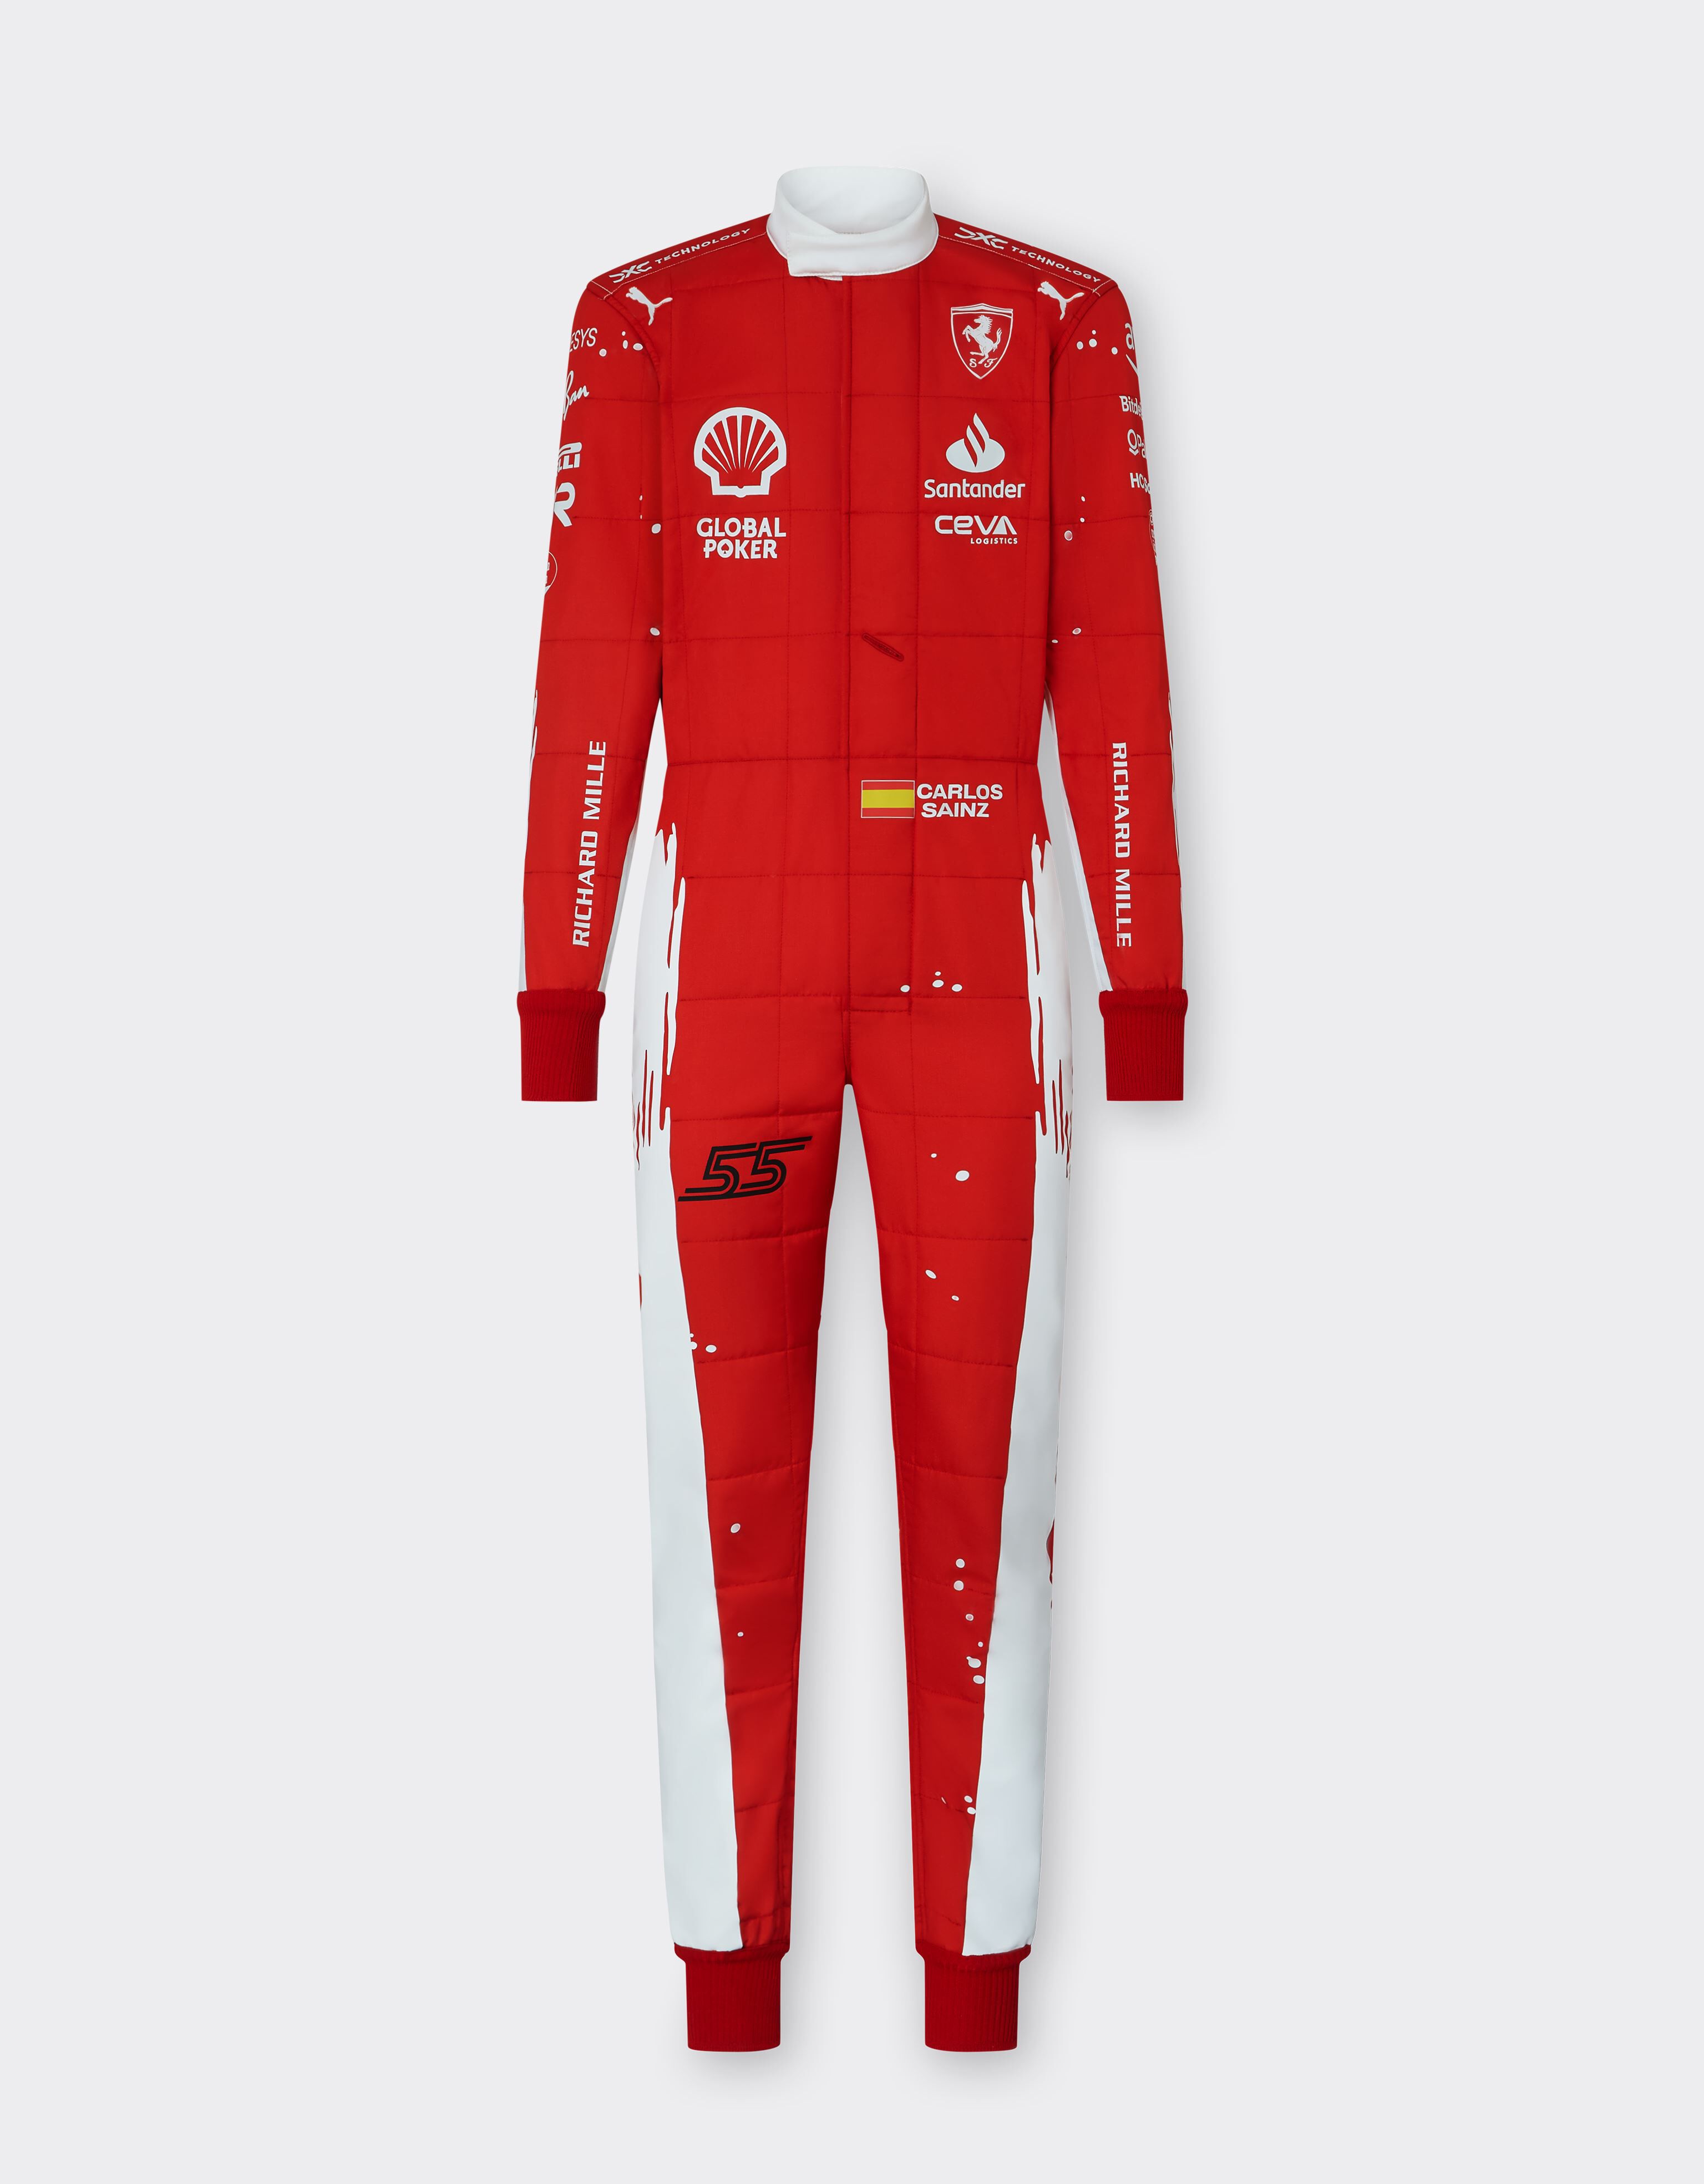 ${brand} F1-Anzug PRO Carlos Sainz Puma für Scuderia Ferrari - Joshua Vides ${colorDescription} ${masterID}